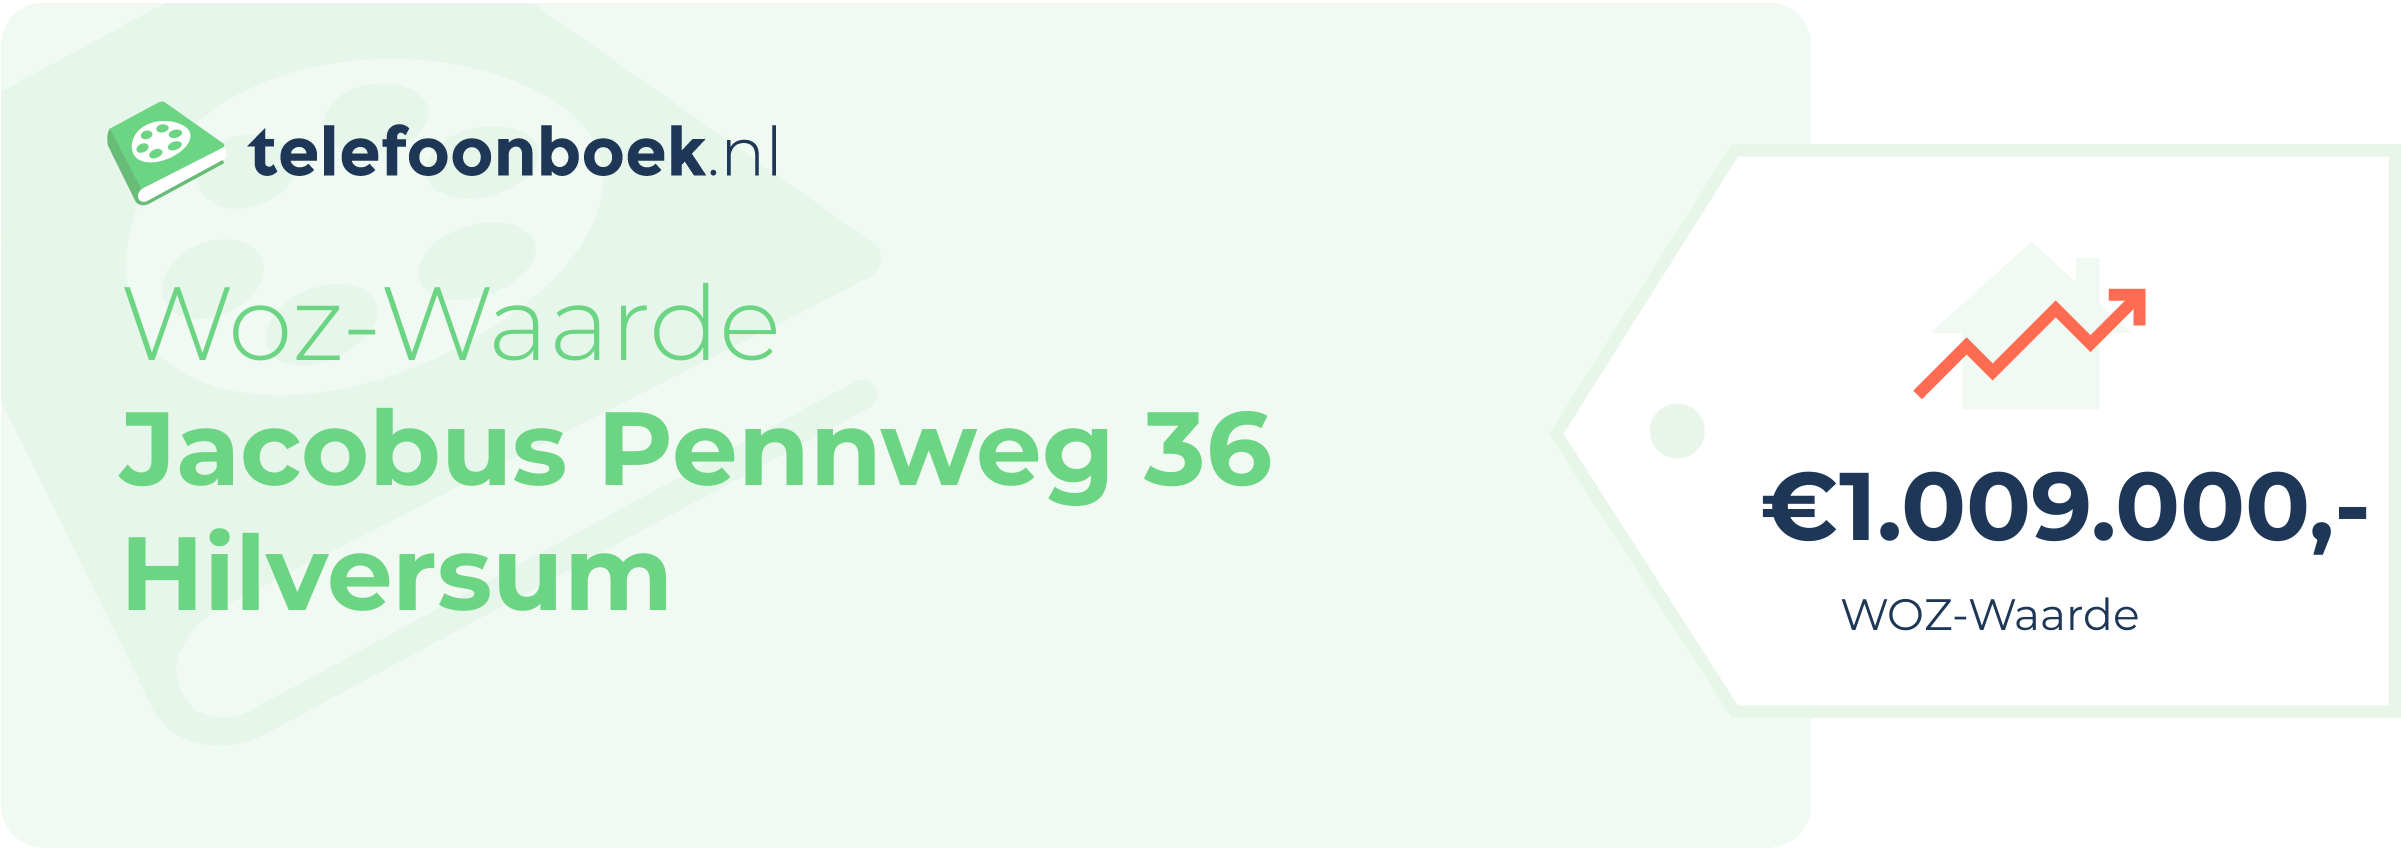 WOZ-waarde Jacobus Pennweg 36 Hilversum